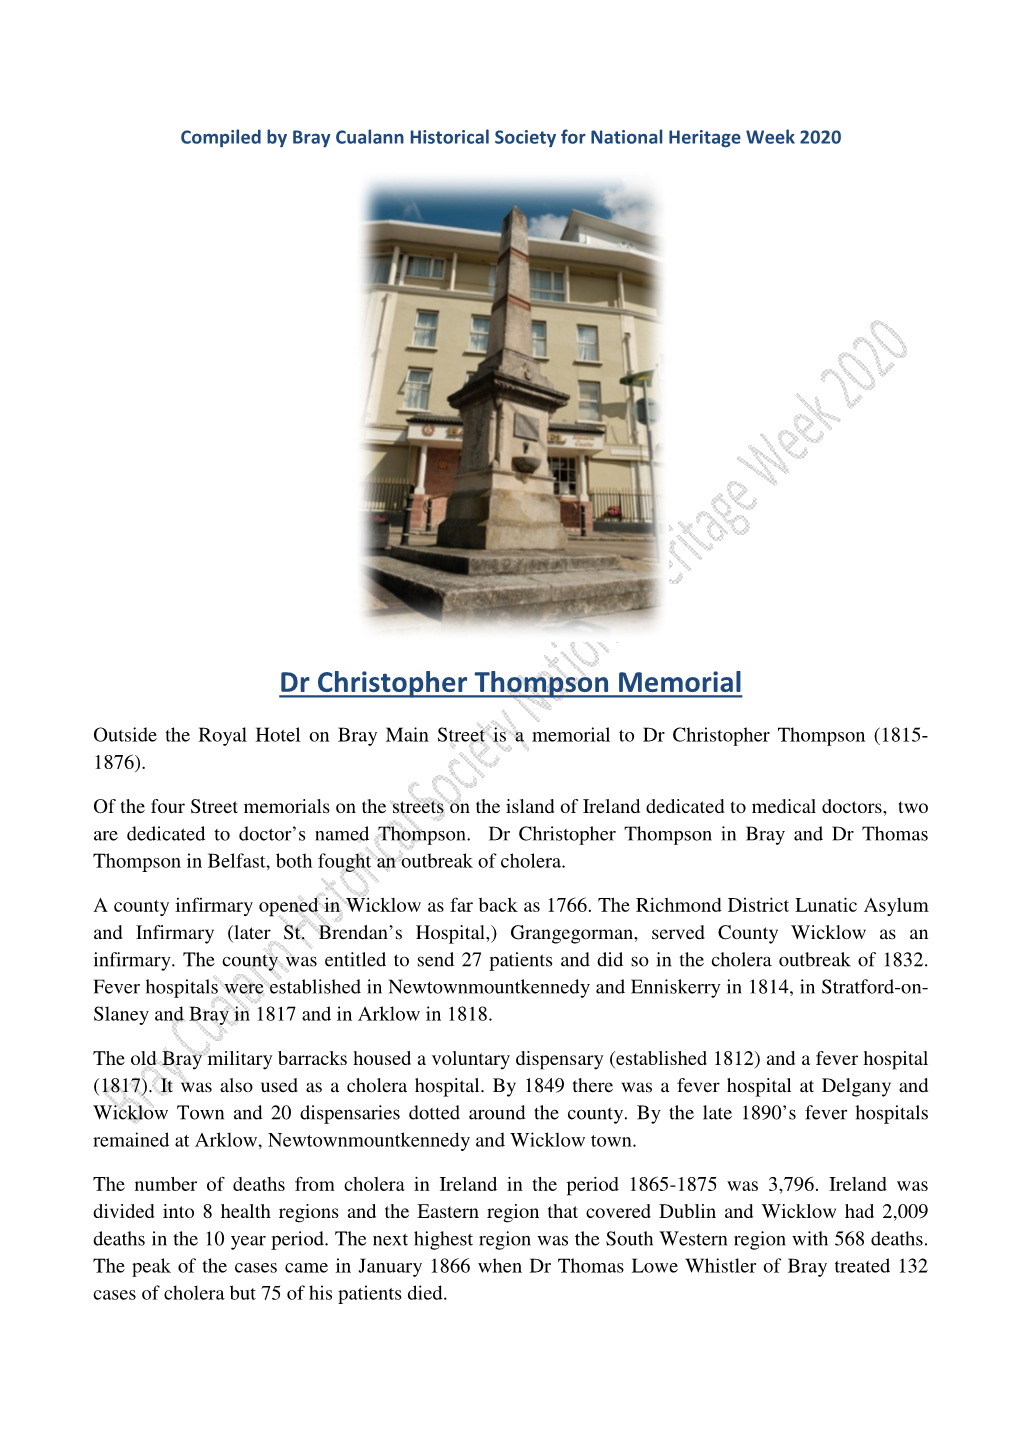 Dr Christopher Thompson Memorial